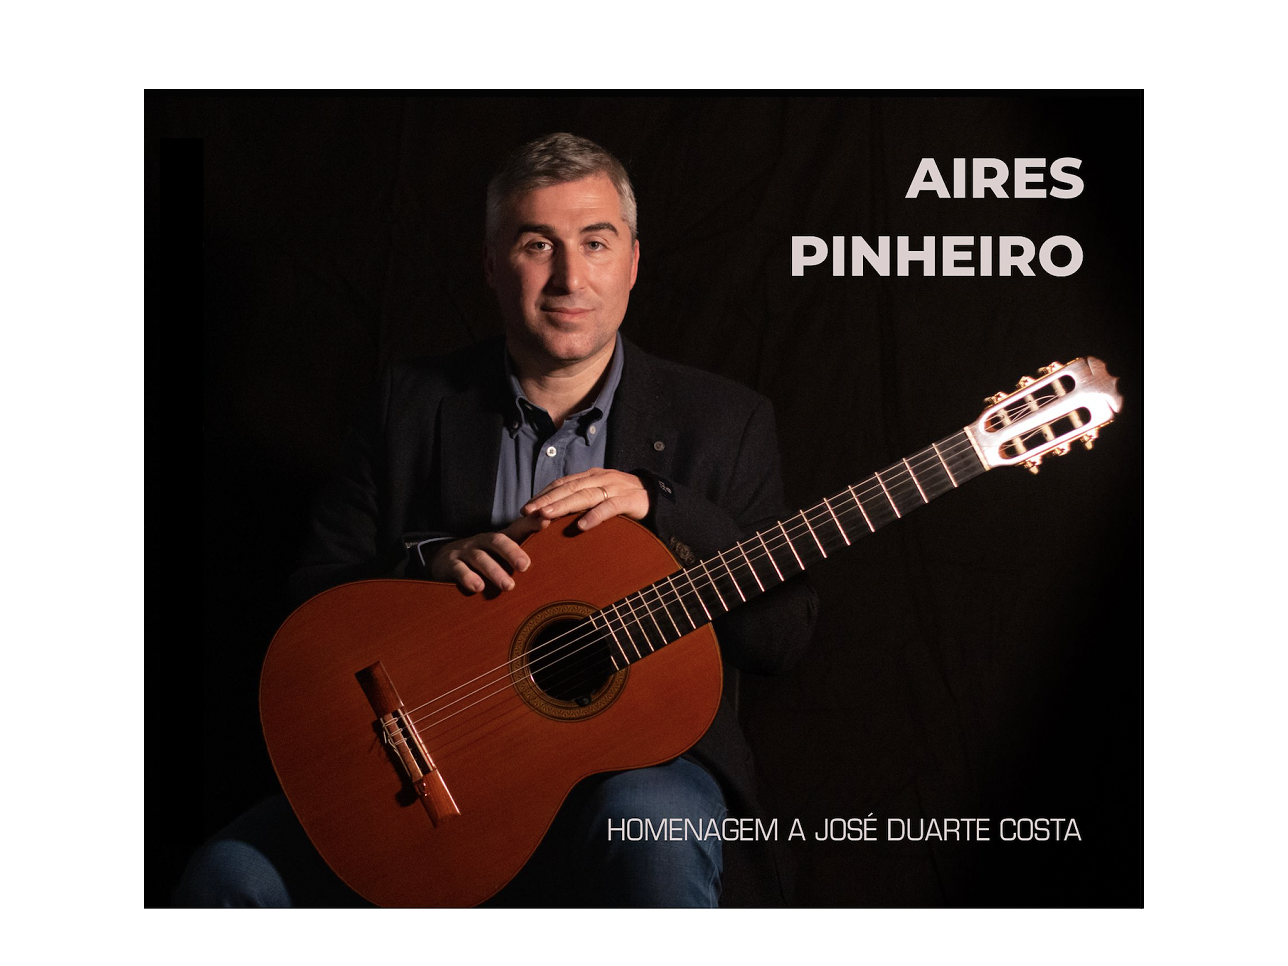 Aires Pinheiro